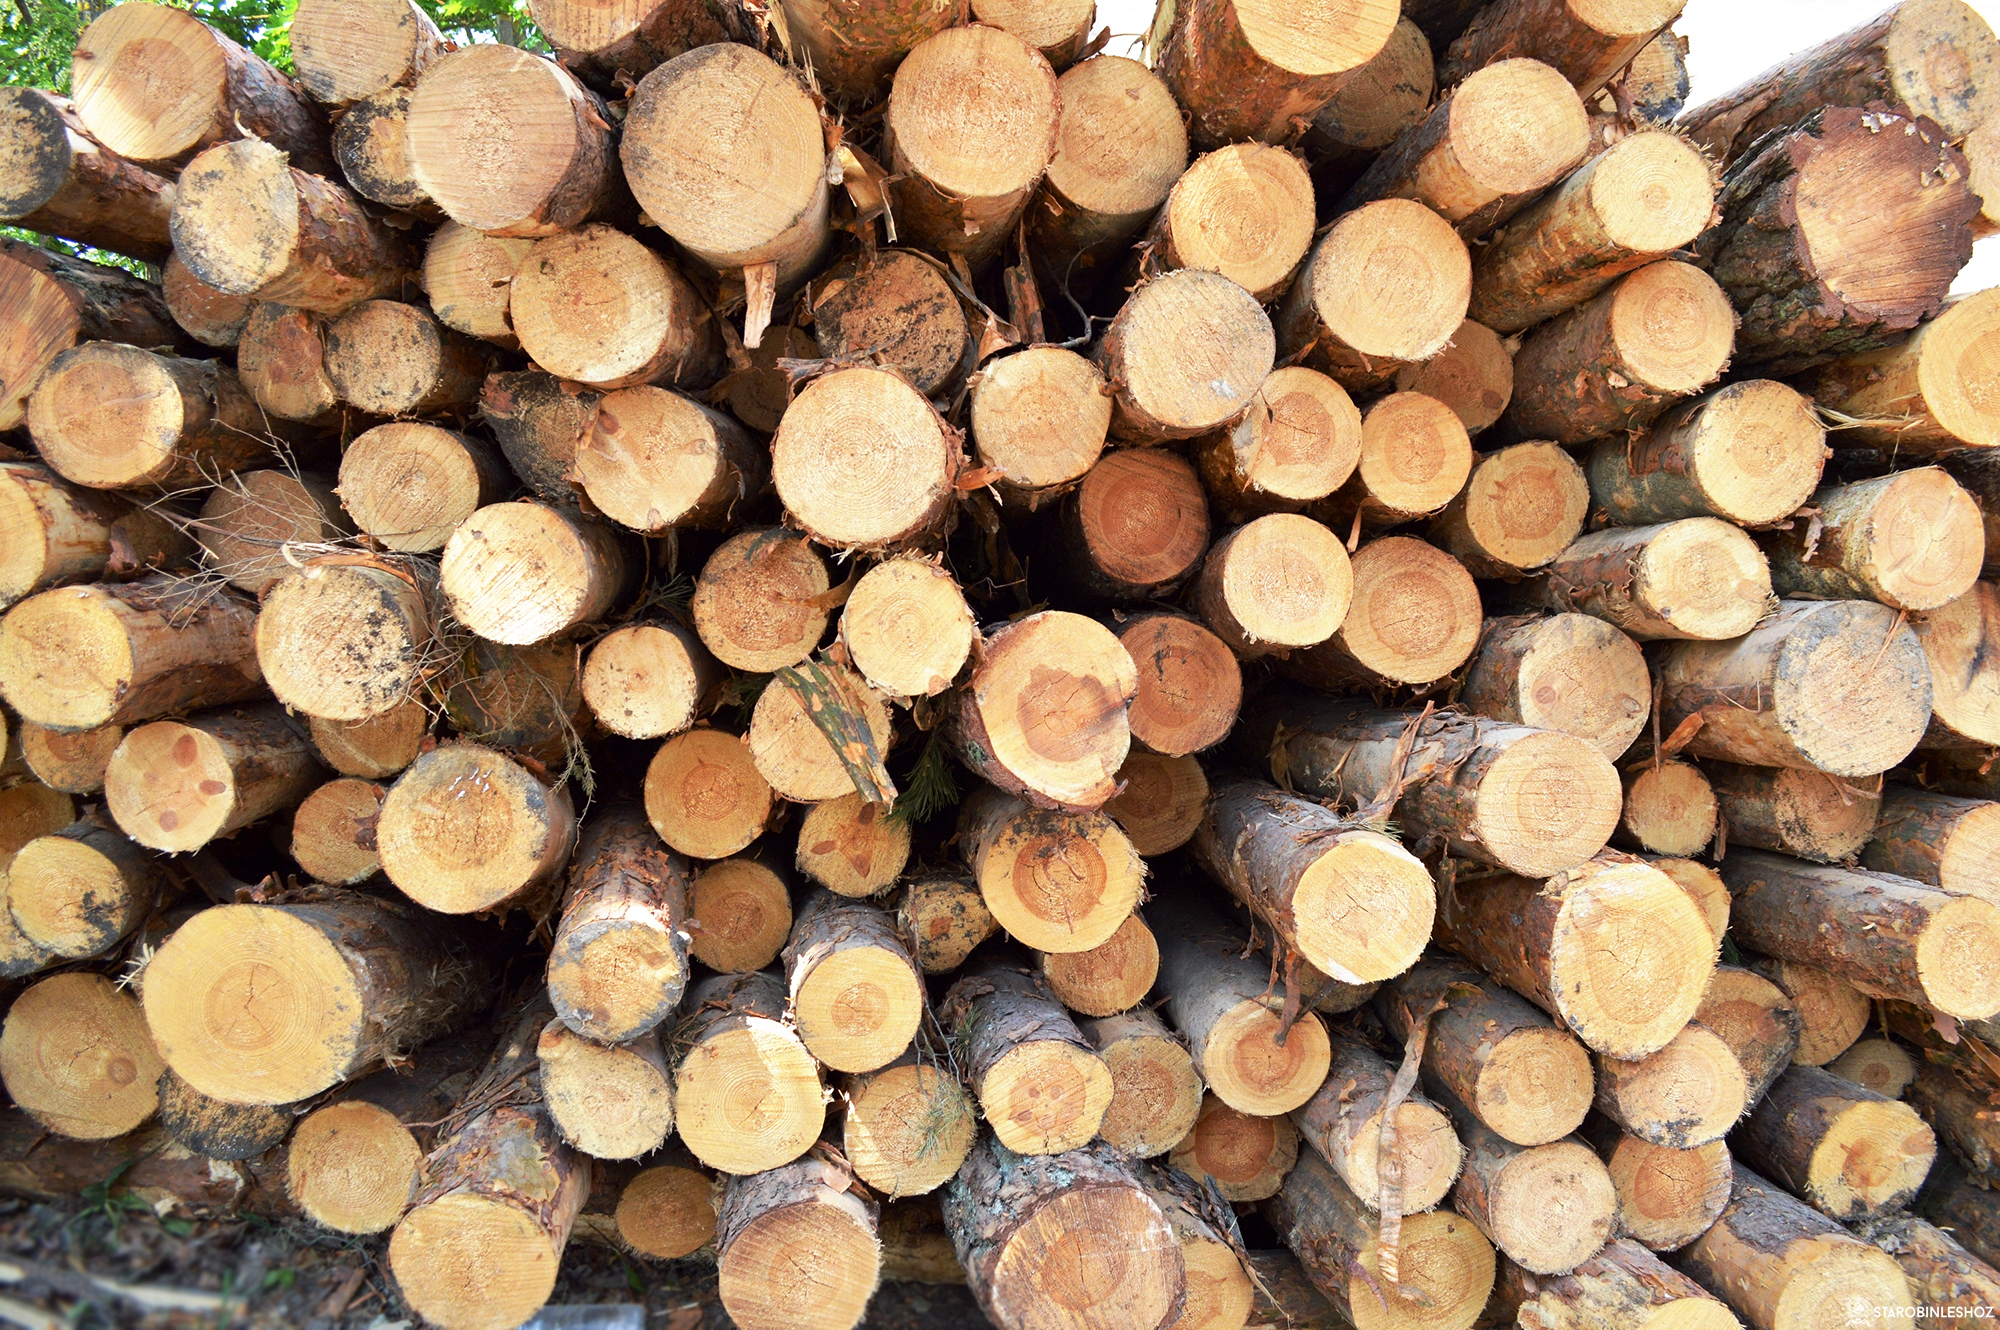 Обновленный порядок заготовки древесины вынесен на общественное обсуждение